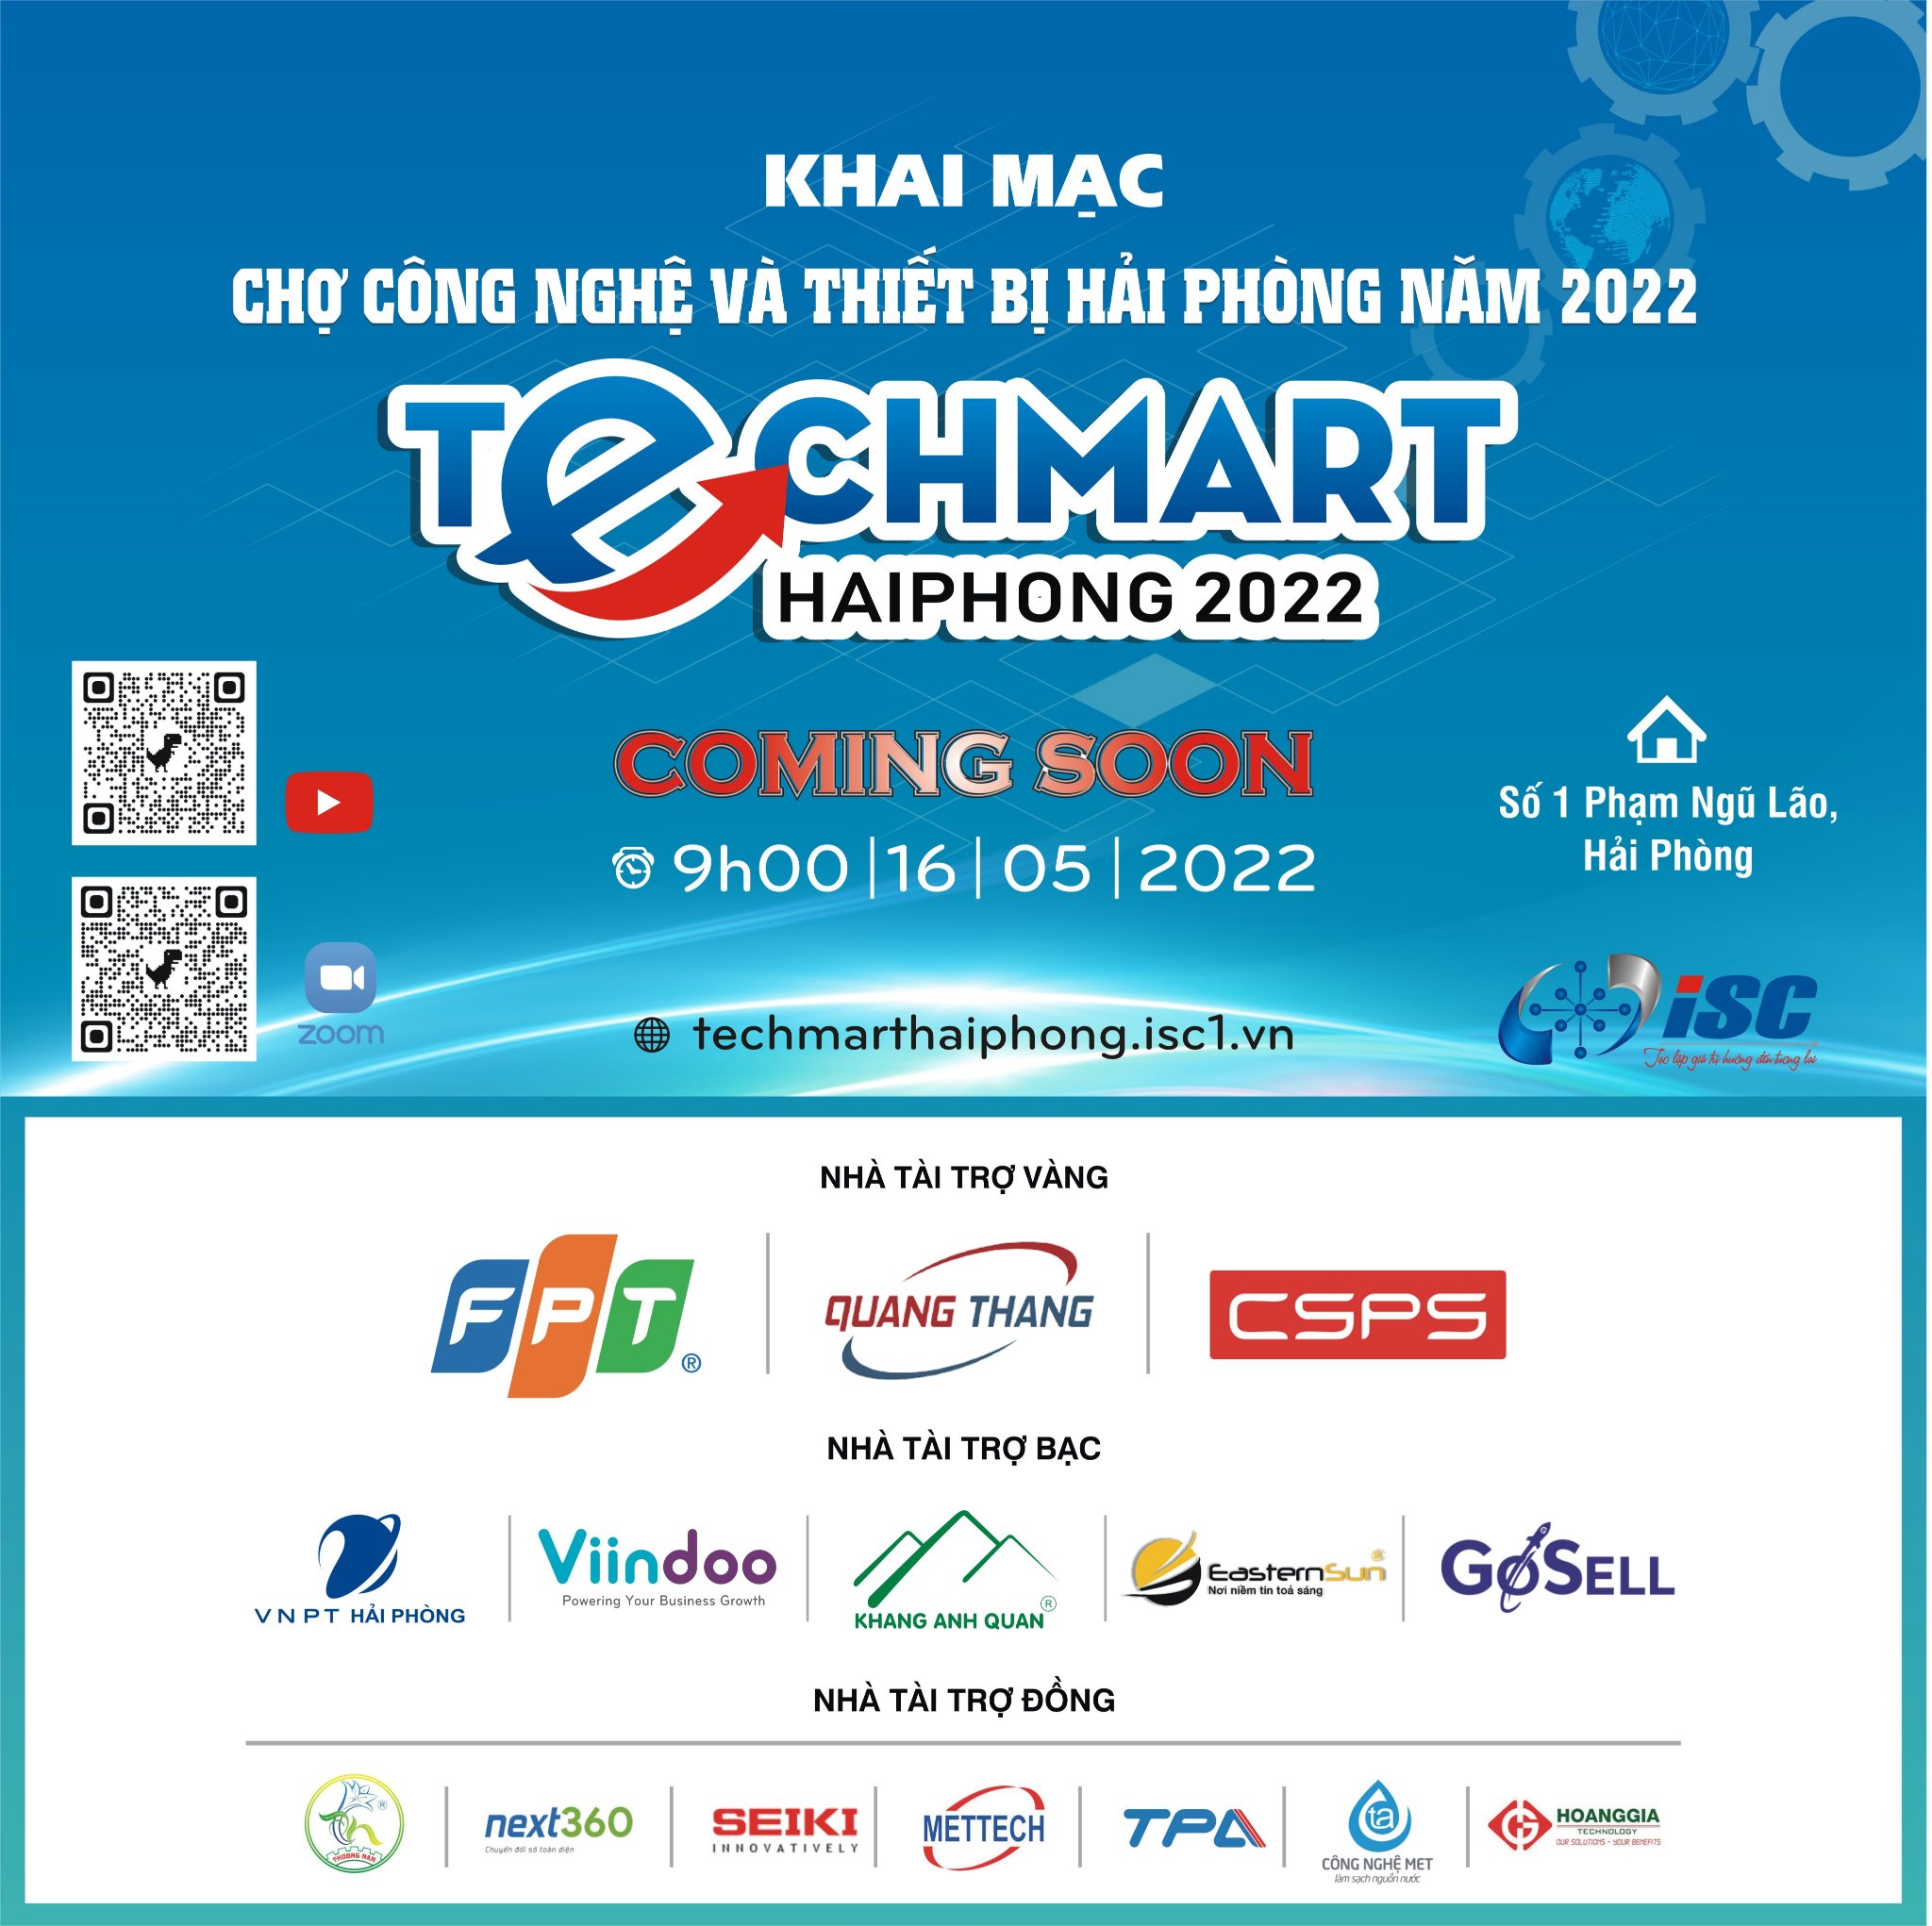 Techmart Haiphong 2022 trên nền tảng trực tuyến sẽ chính thức khai mạc vào ngày 16/5/2022